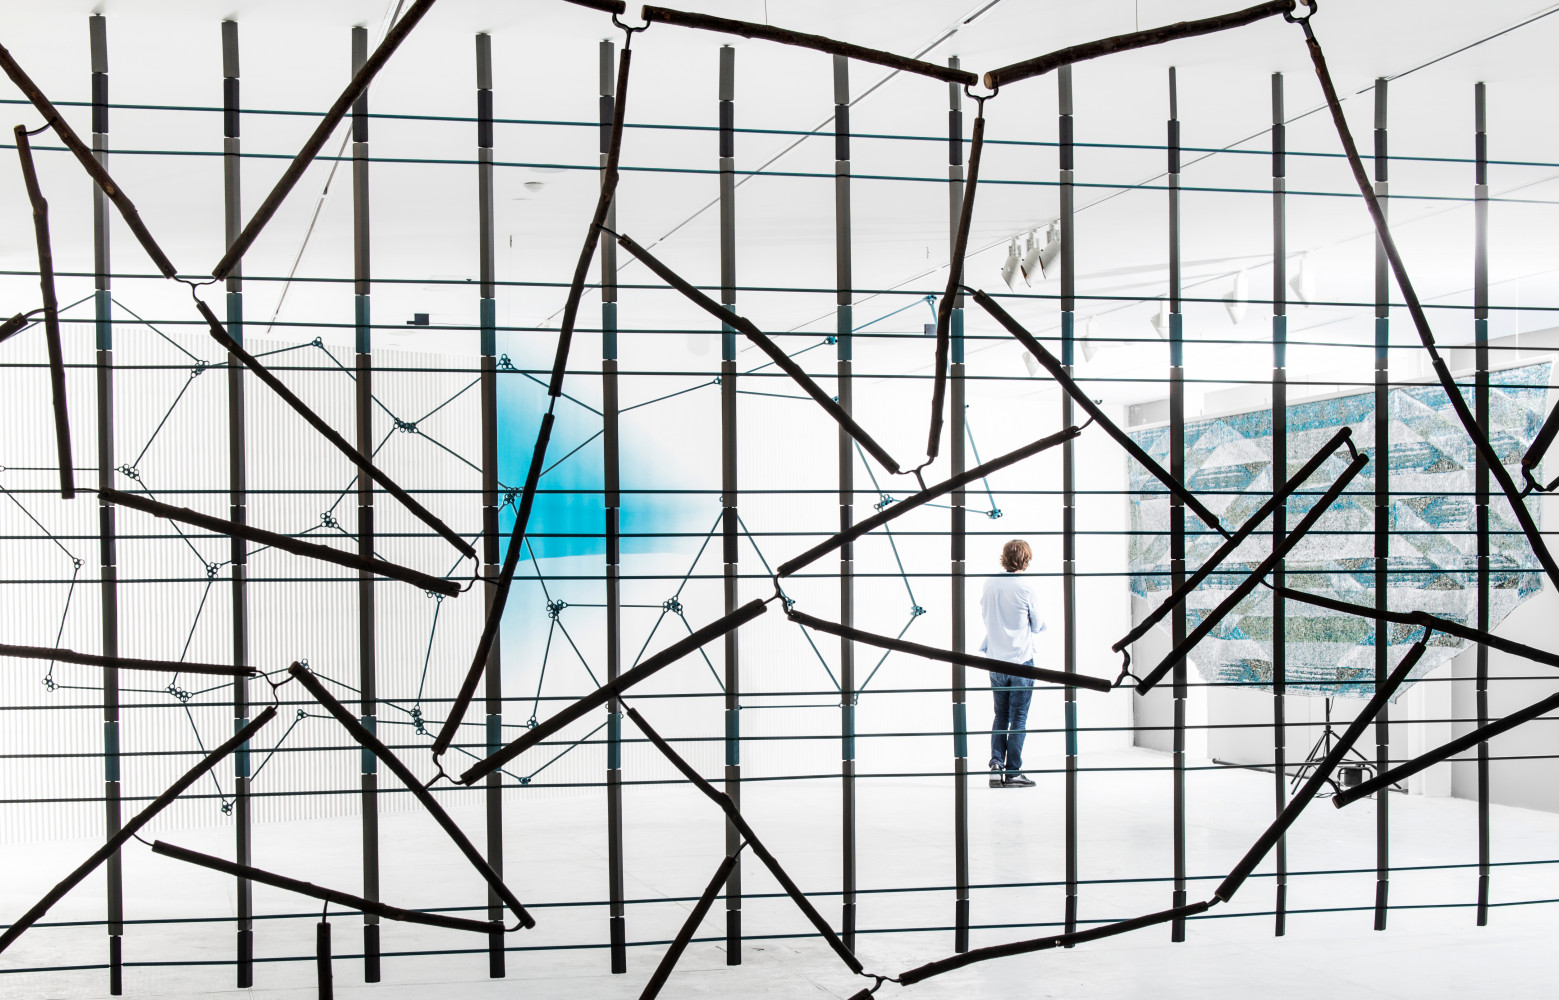 Installation « 17 screens » au FRAC Bretagne. Ronan : « C’est une exposition assez abstraite sur...